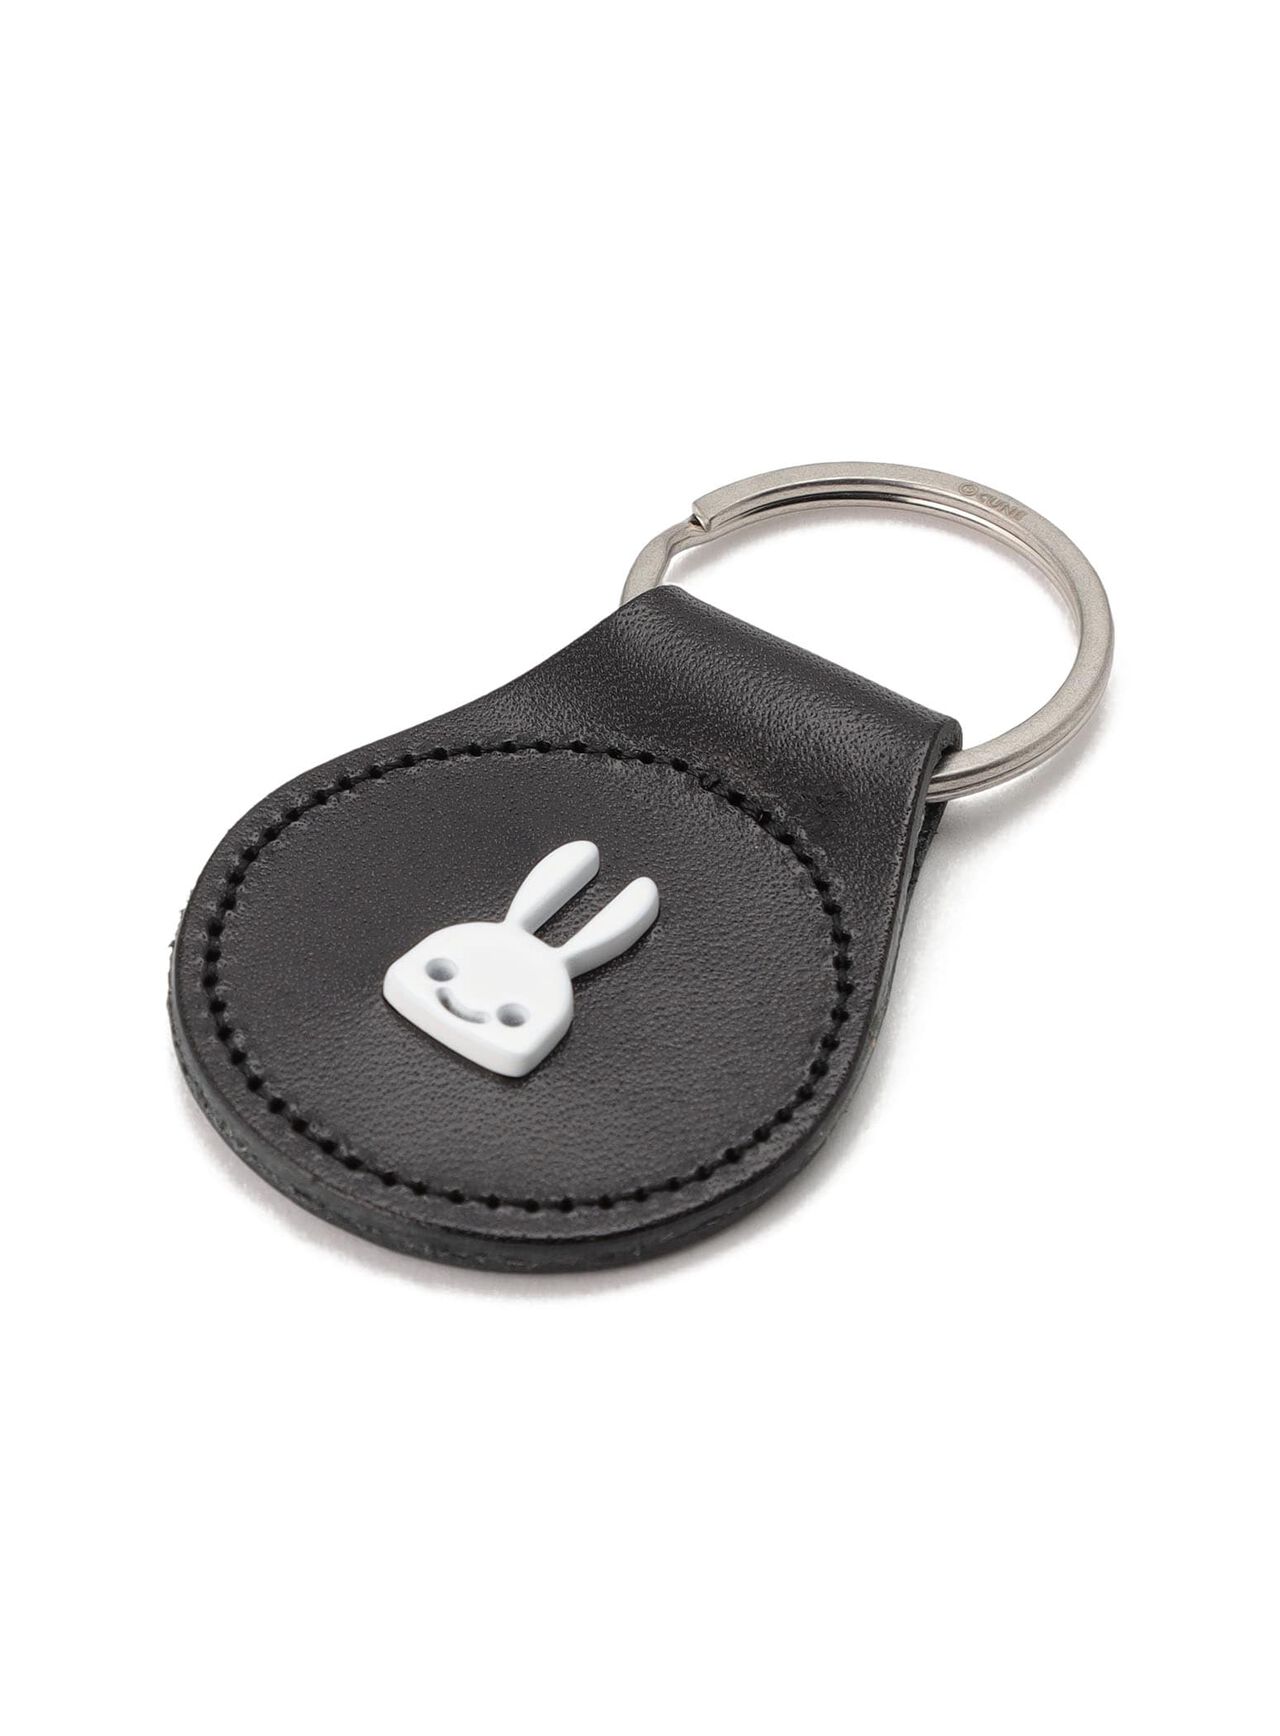 Rabbit studded leather round key ring,ONE, large image number 2